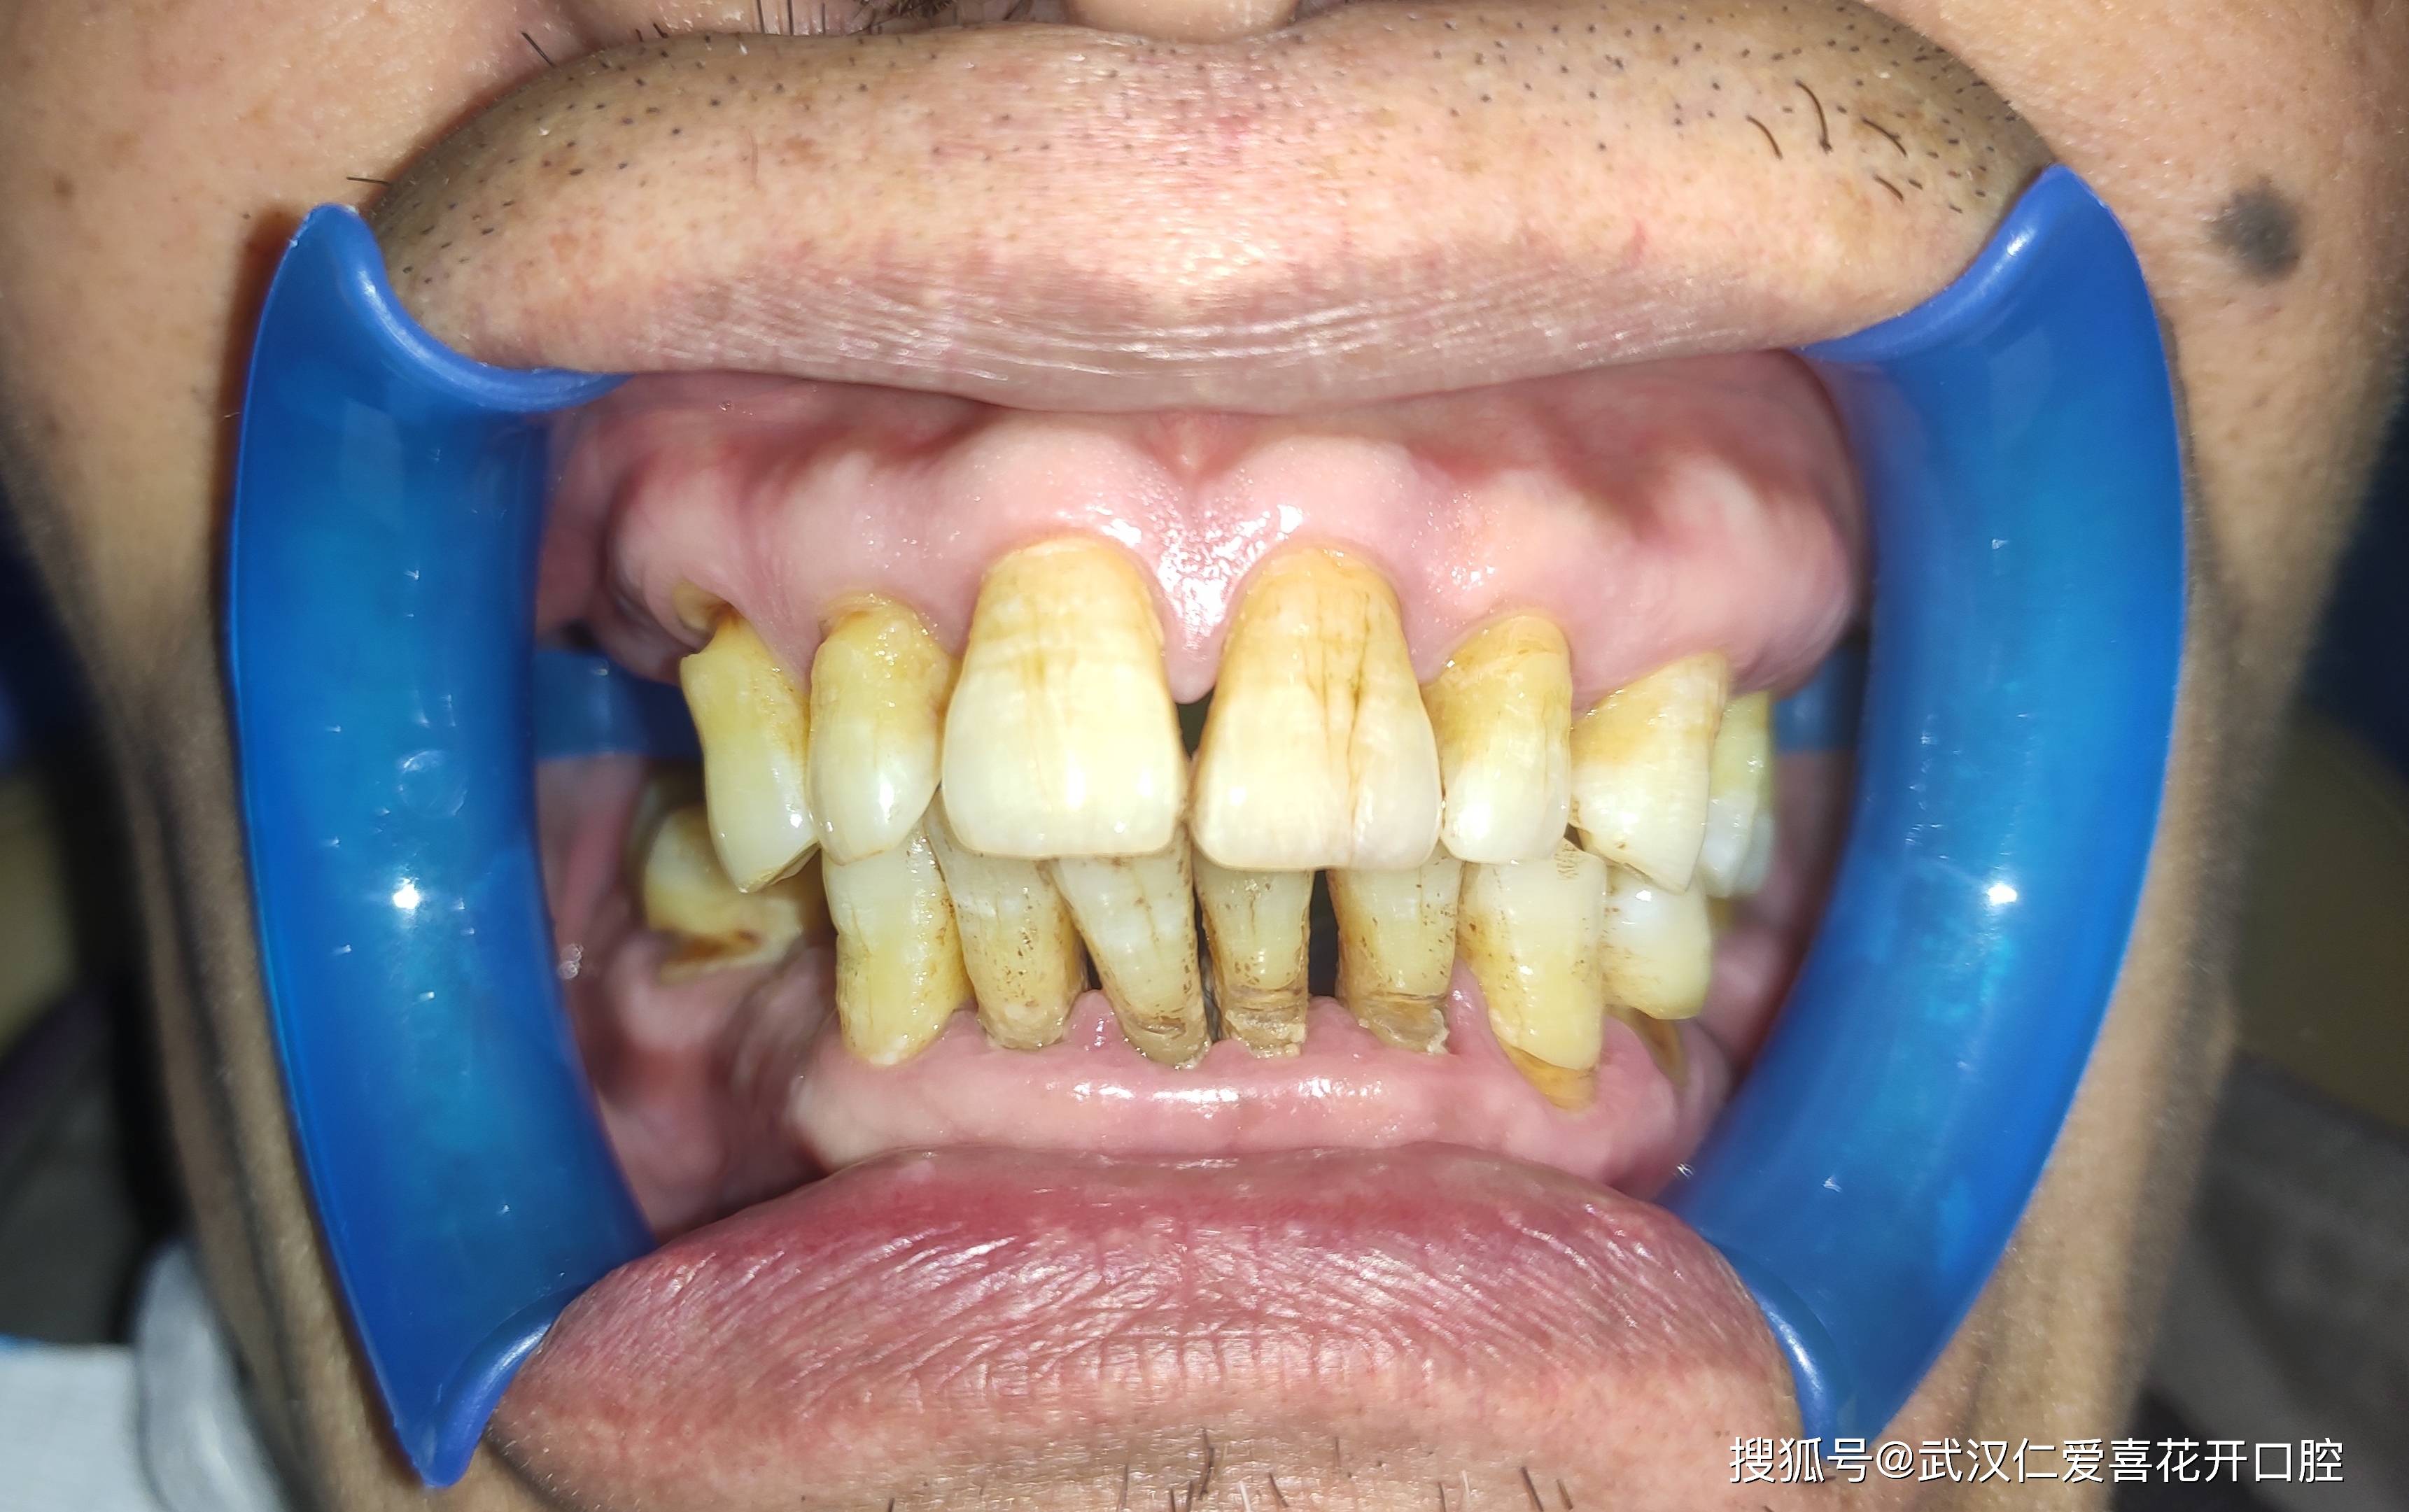 中期牙周炎:牙周袋会进一步加深,牙齿有松动,移位的症状.